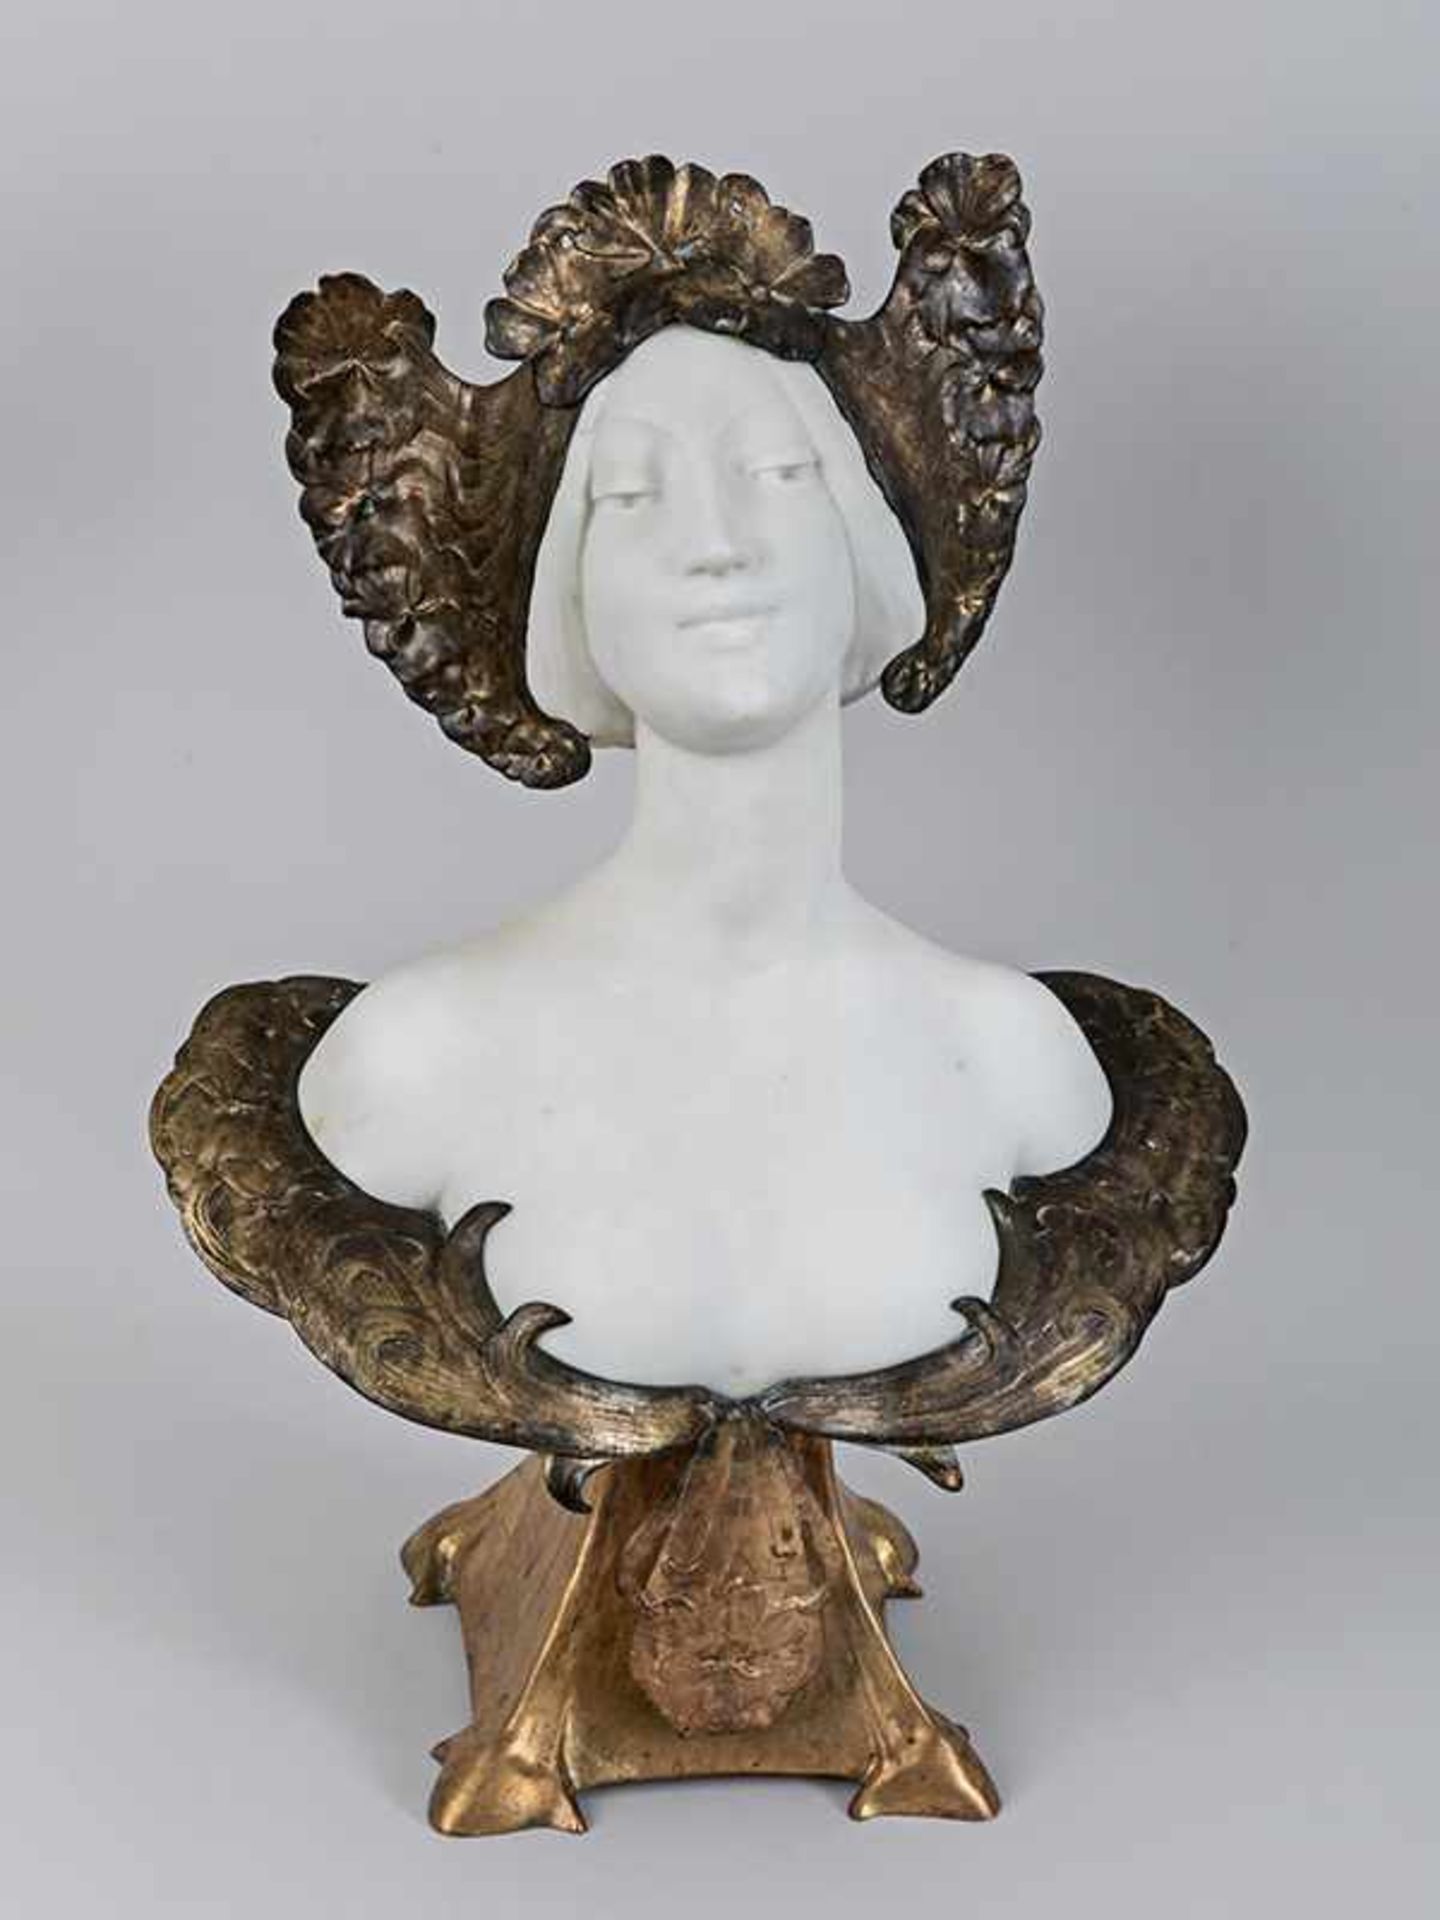 Chalon, Louis (1866 - 1940). Chalon, Louis (1866 - 1940). Große Art-Nouveau-Büste einer jungen Dame